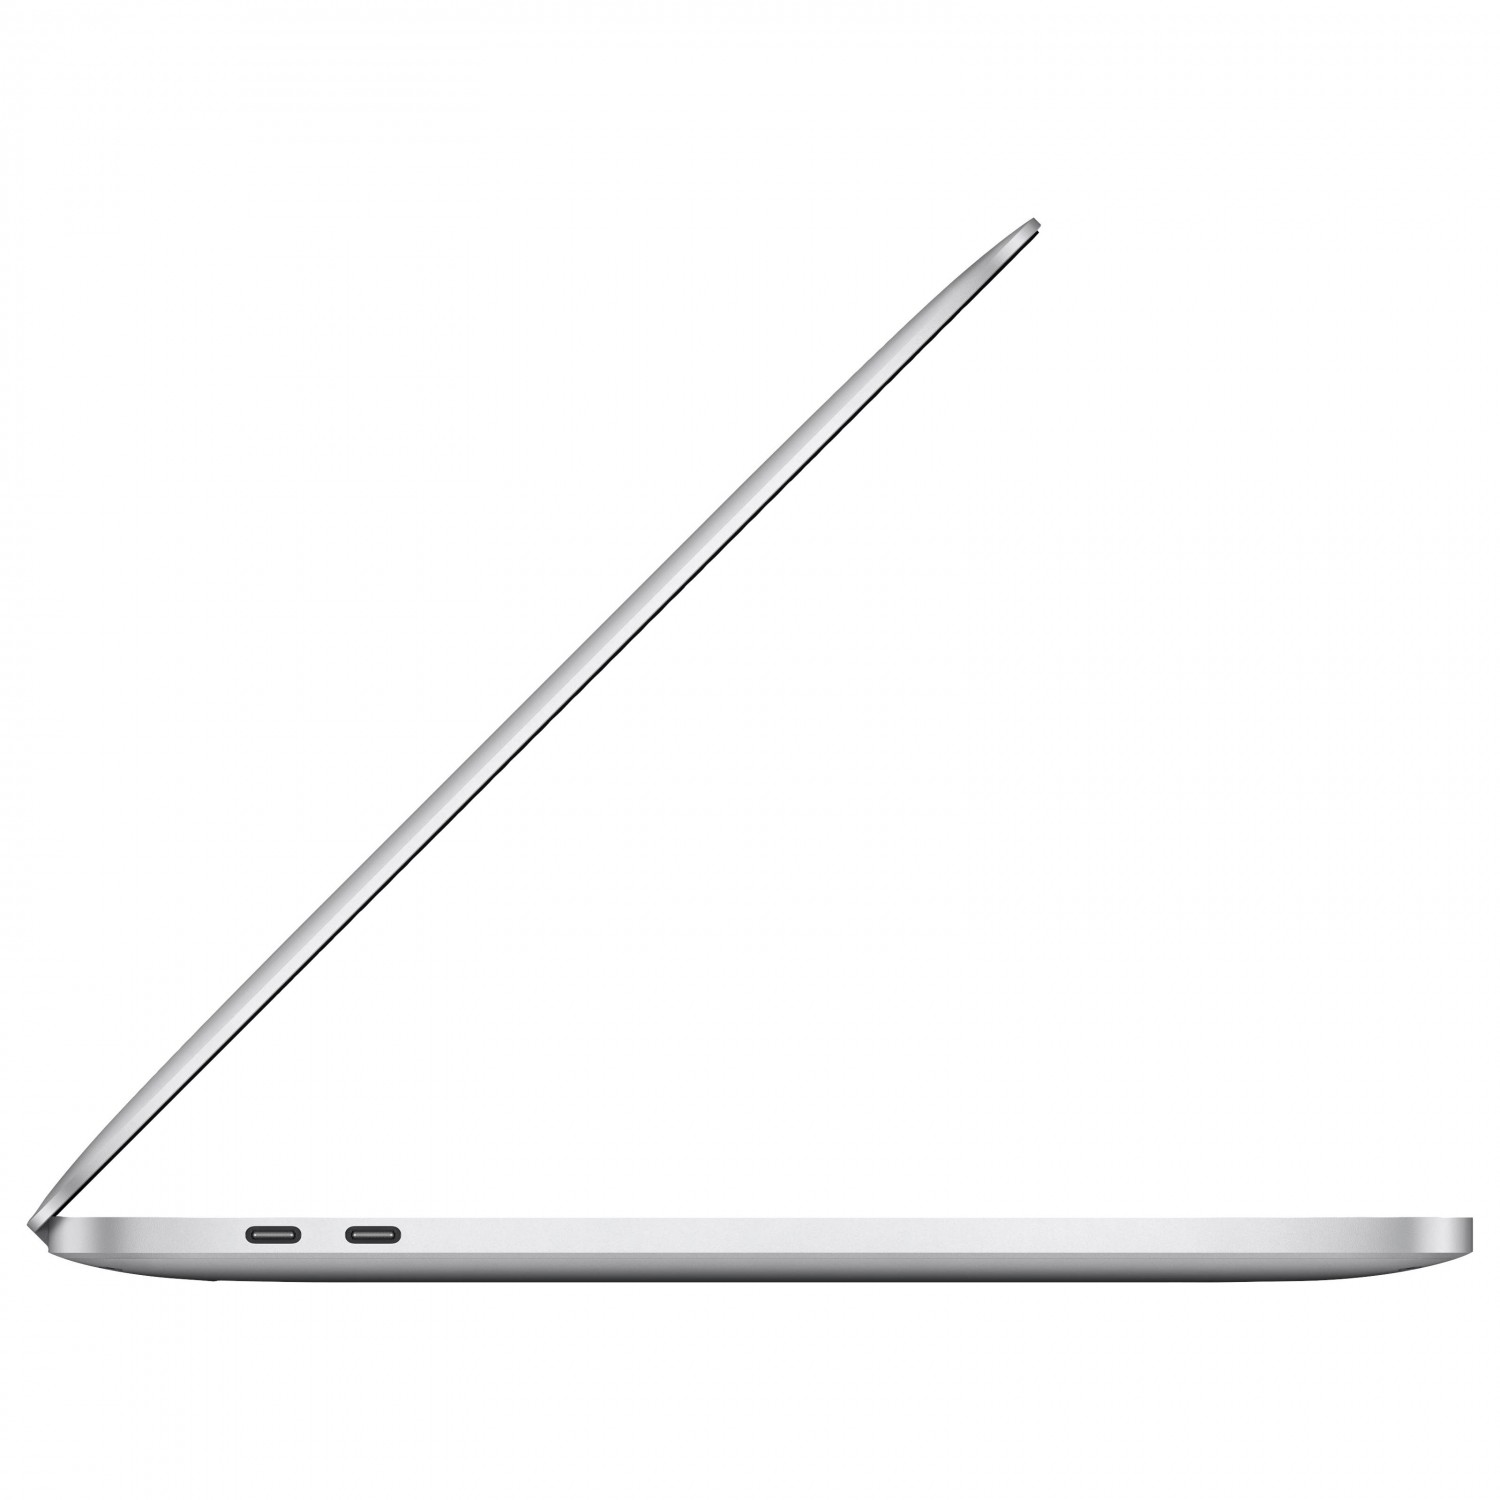 لپ تاپ Apple MacBook Pro 13 2020 CTO - Silver - D-4